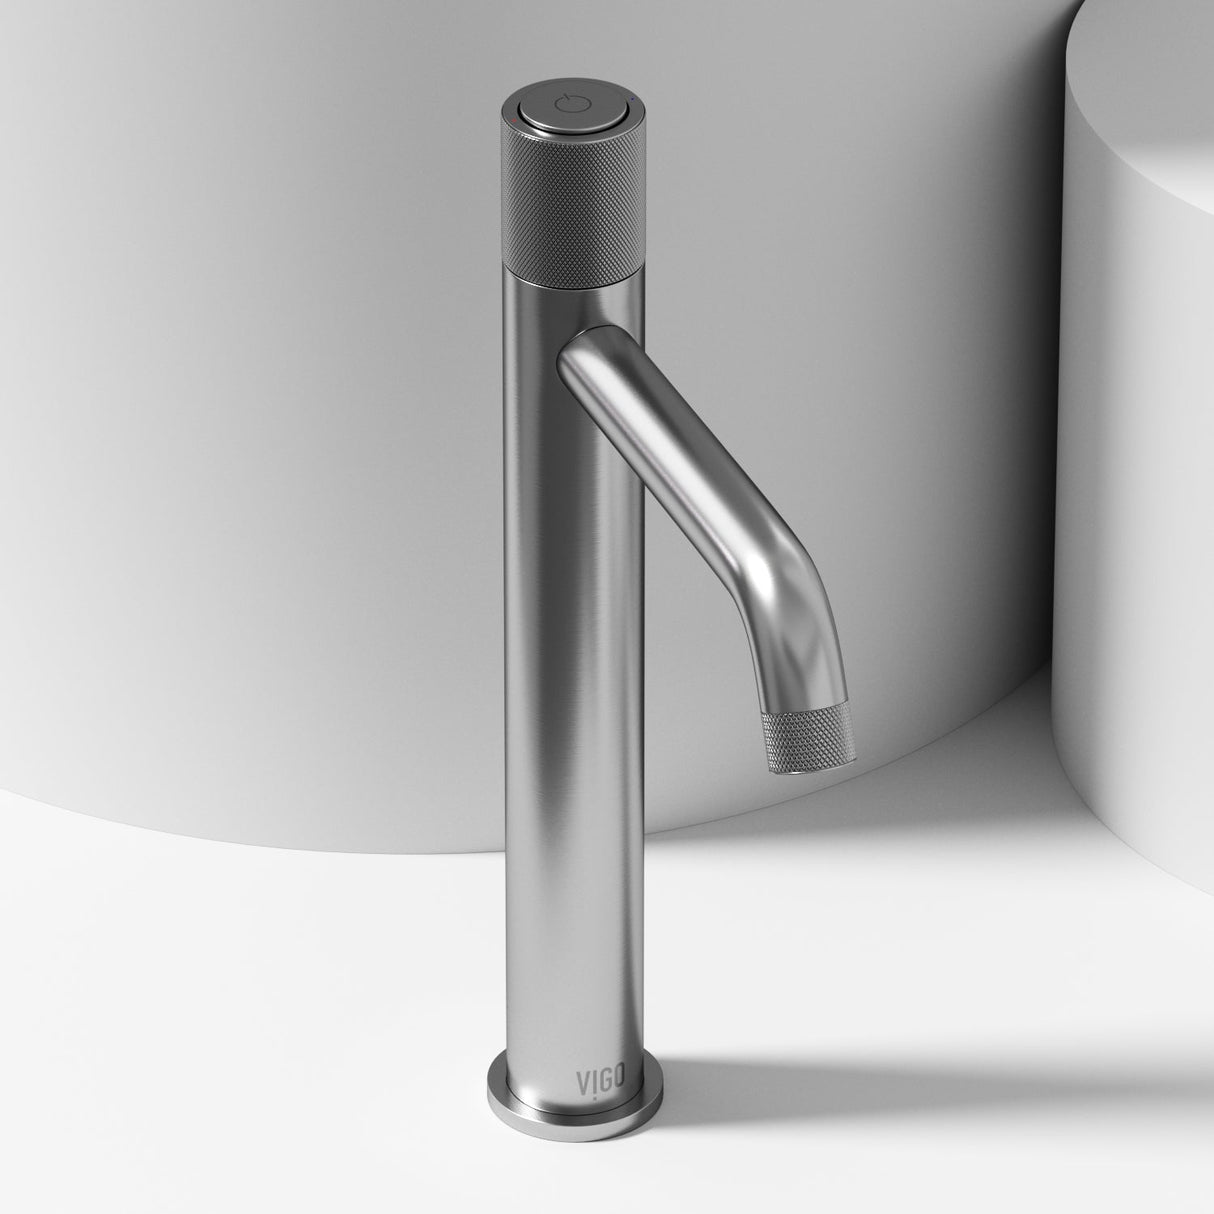 VIGO Apollo Vessel Bathroom Faucet in Brushed Nickel VG03031BN